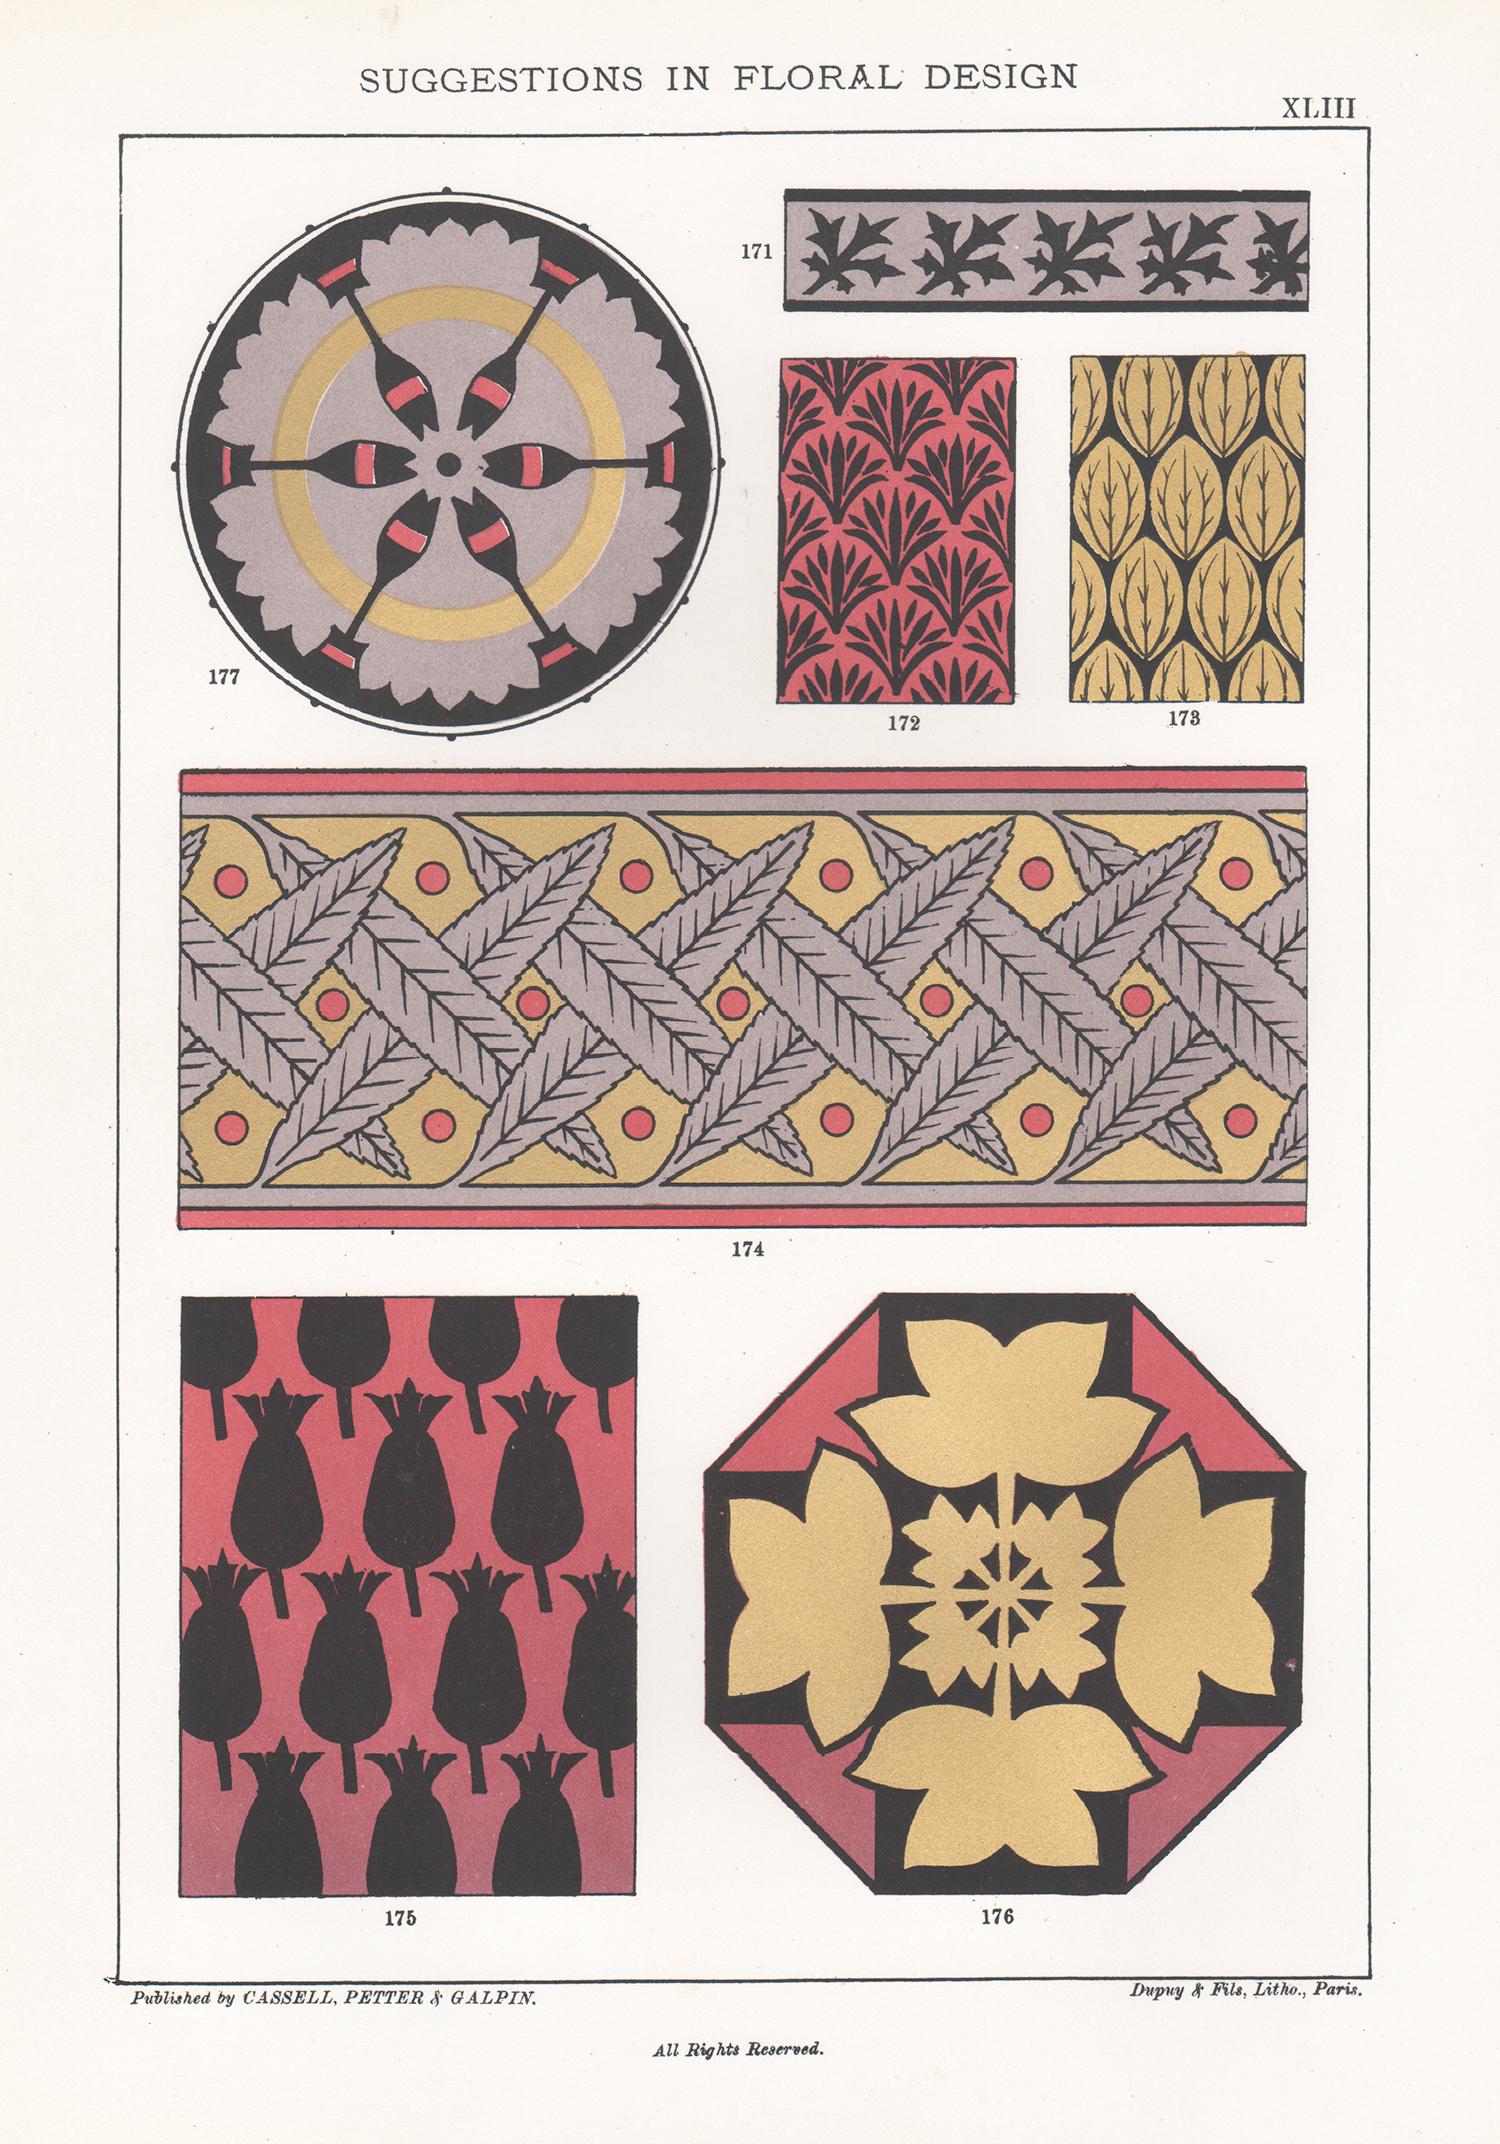 Interior Print Frederick William Hulme - Suggestions en matière de design floral, Frederick Hulme, chromolithographie du XIXe siècle